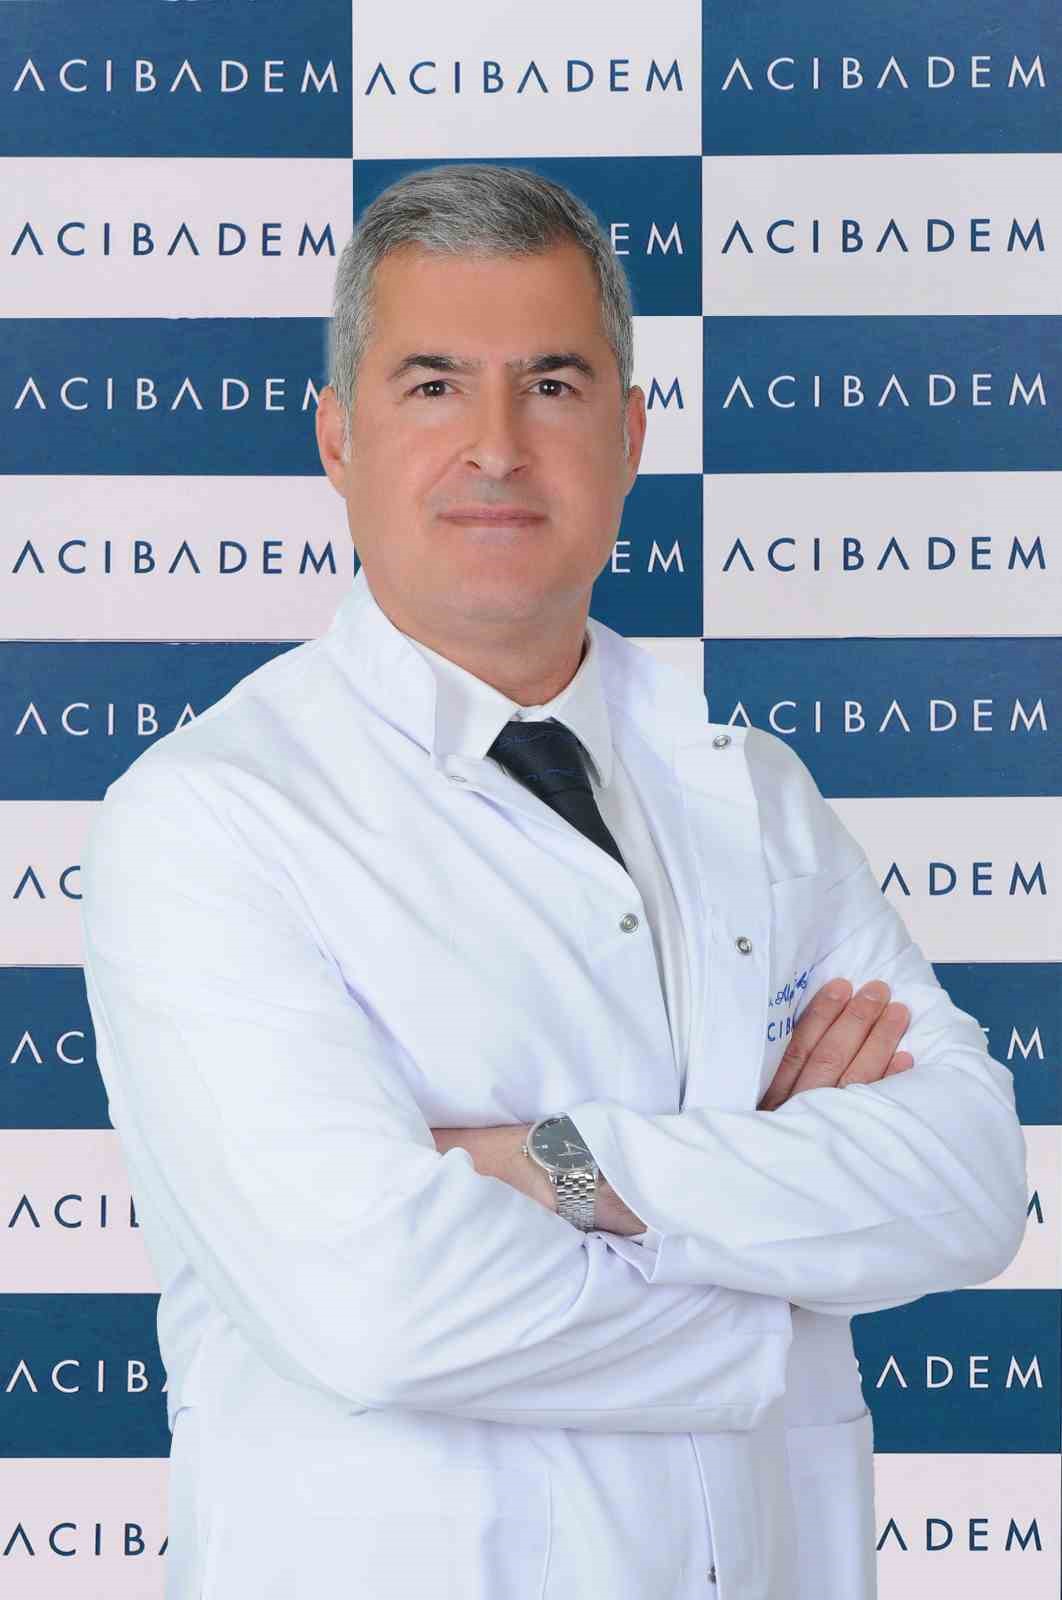 Prof. Dr. Fındıkçıoğlu: “Türkiye’de yılda 30 bin kişiye akciğer kanseri teşhisi konuluyor”